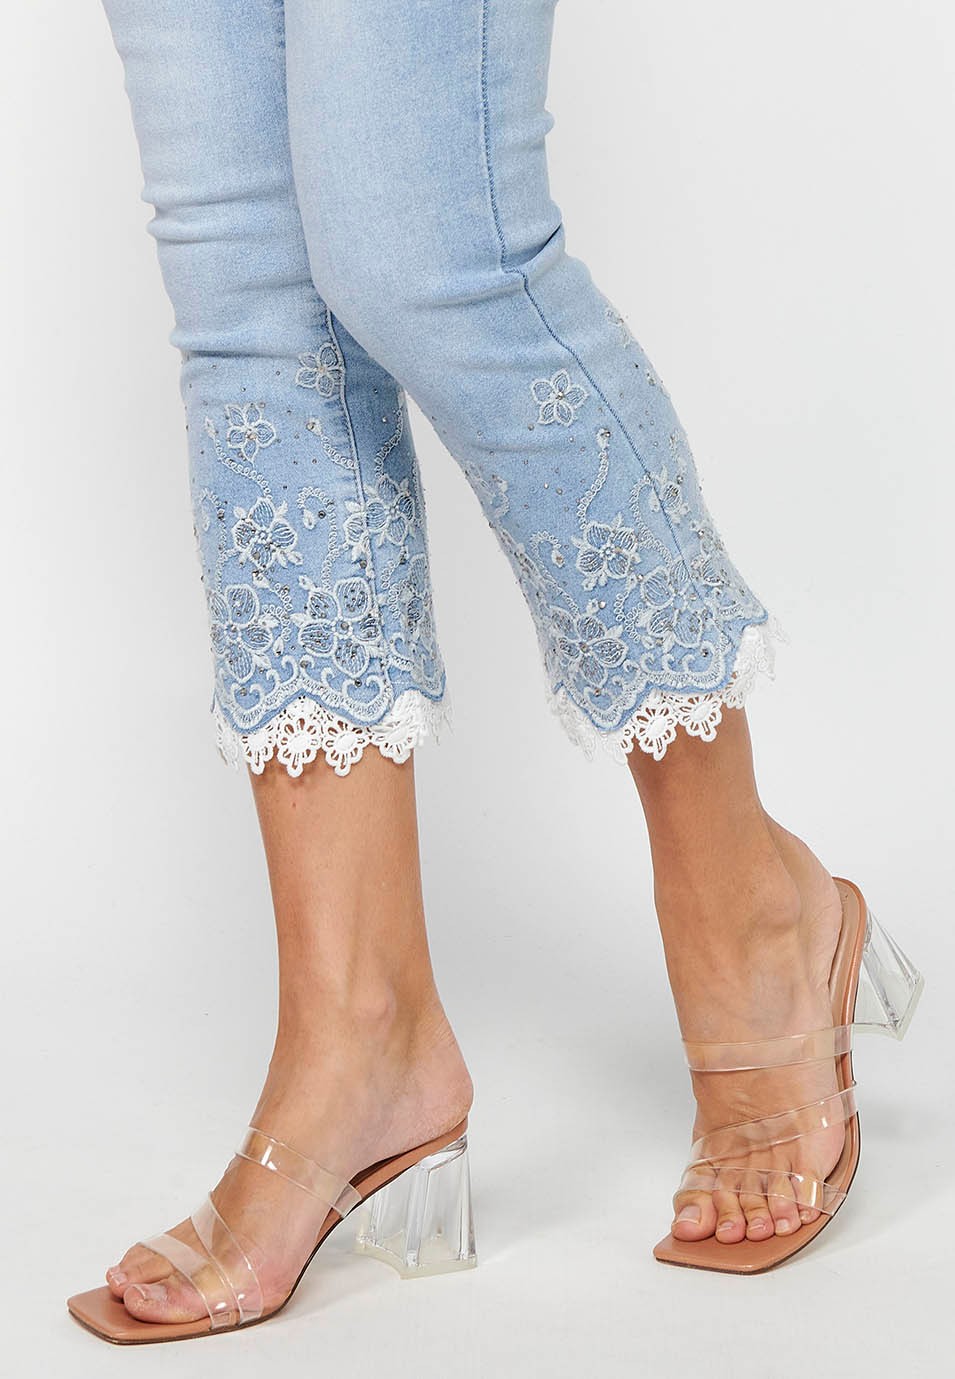 Pantalons llargs jeans slim amb Tancament davanter amb cremallera i Detalls brodats florals de Color Blau clar per a Dona 7